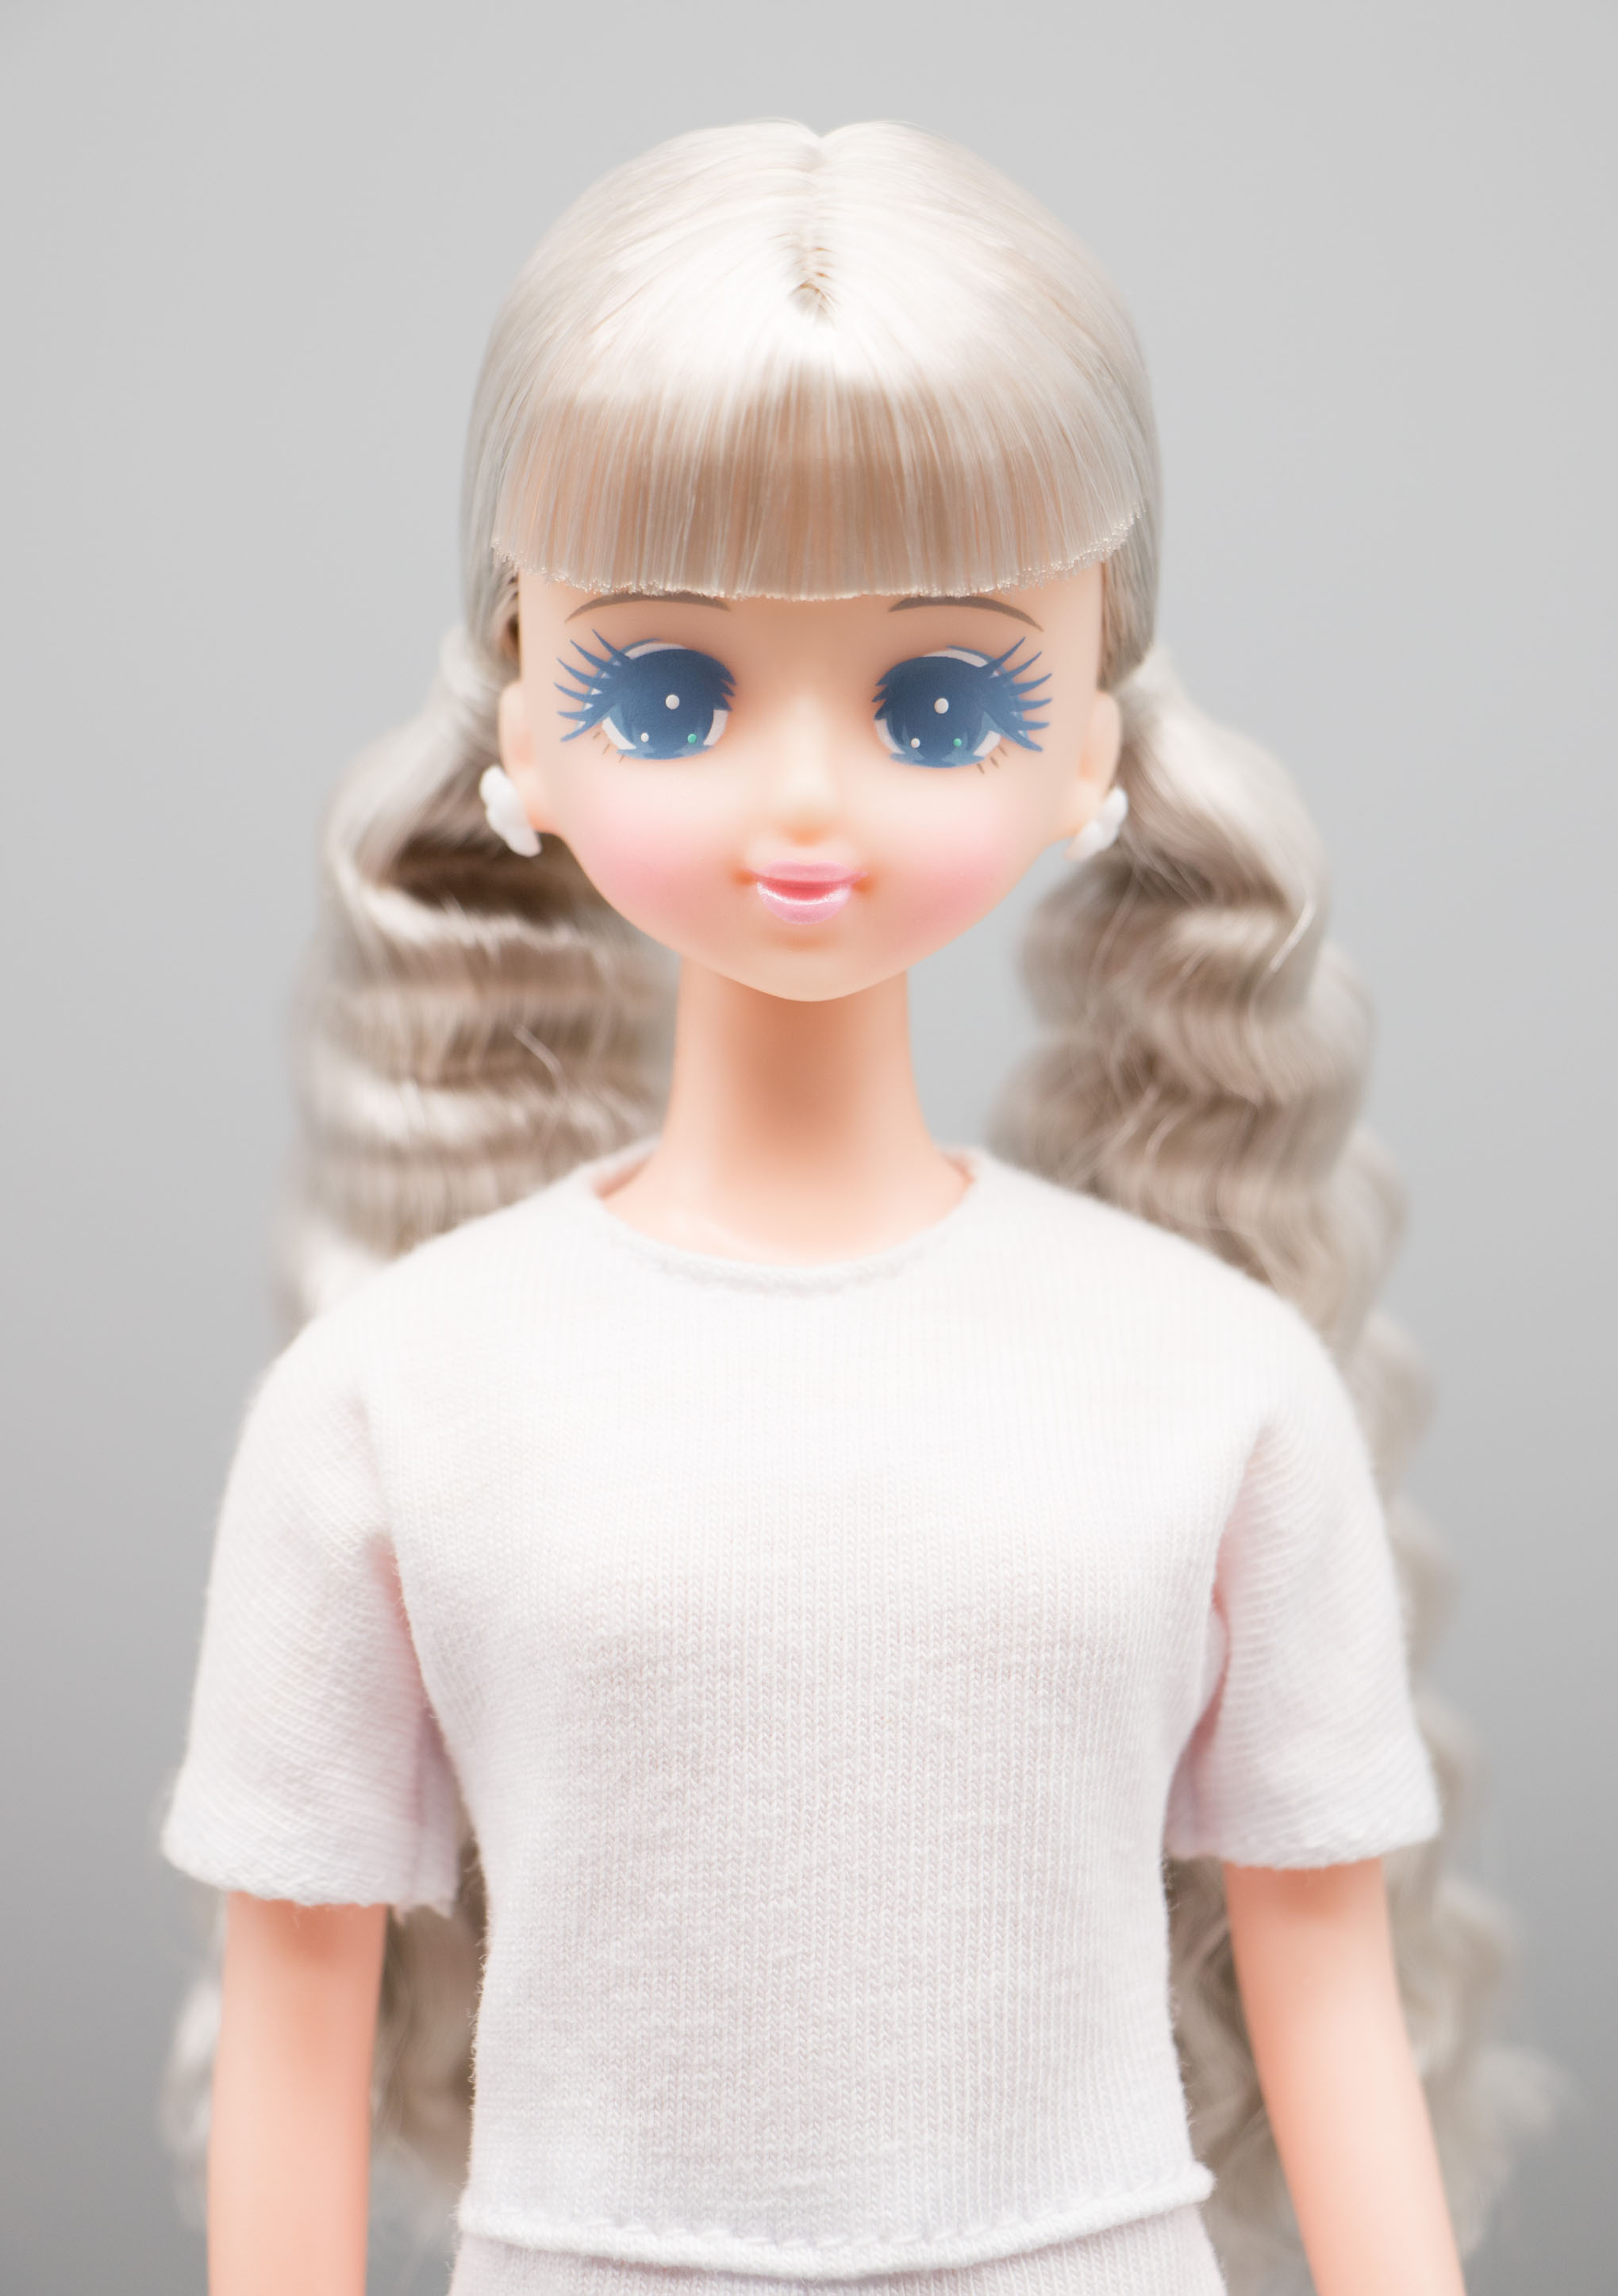 売れ筋公式店 レア リカちゃんキャッスル オリジナルドール プラスチックケース入り ジェニー他 おもちゃ/人形